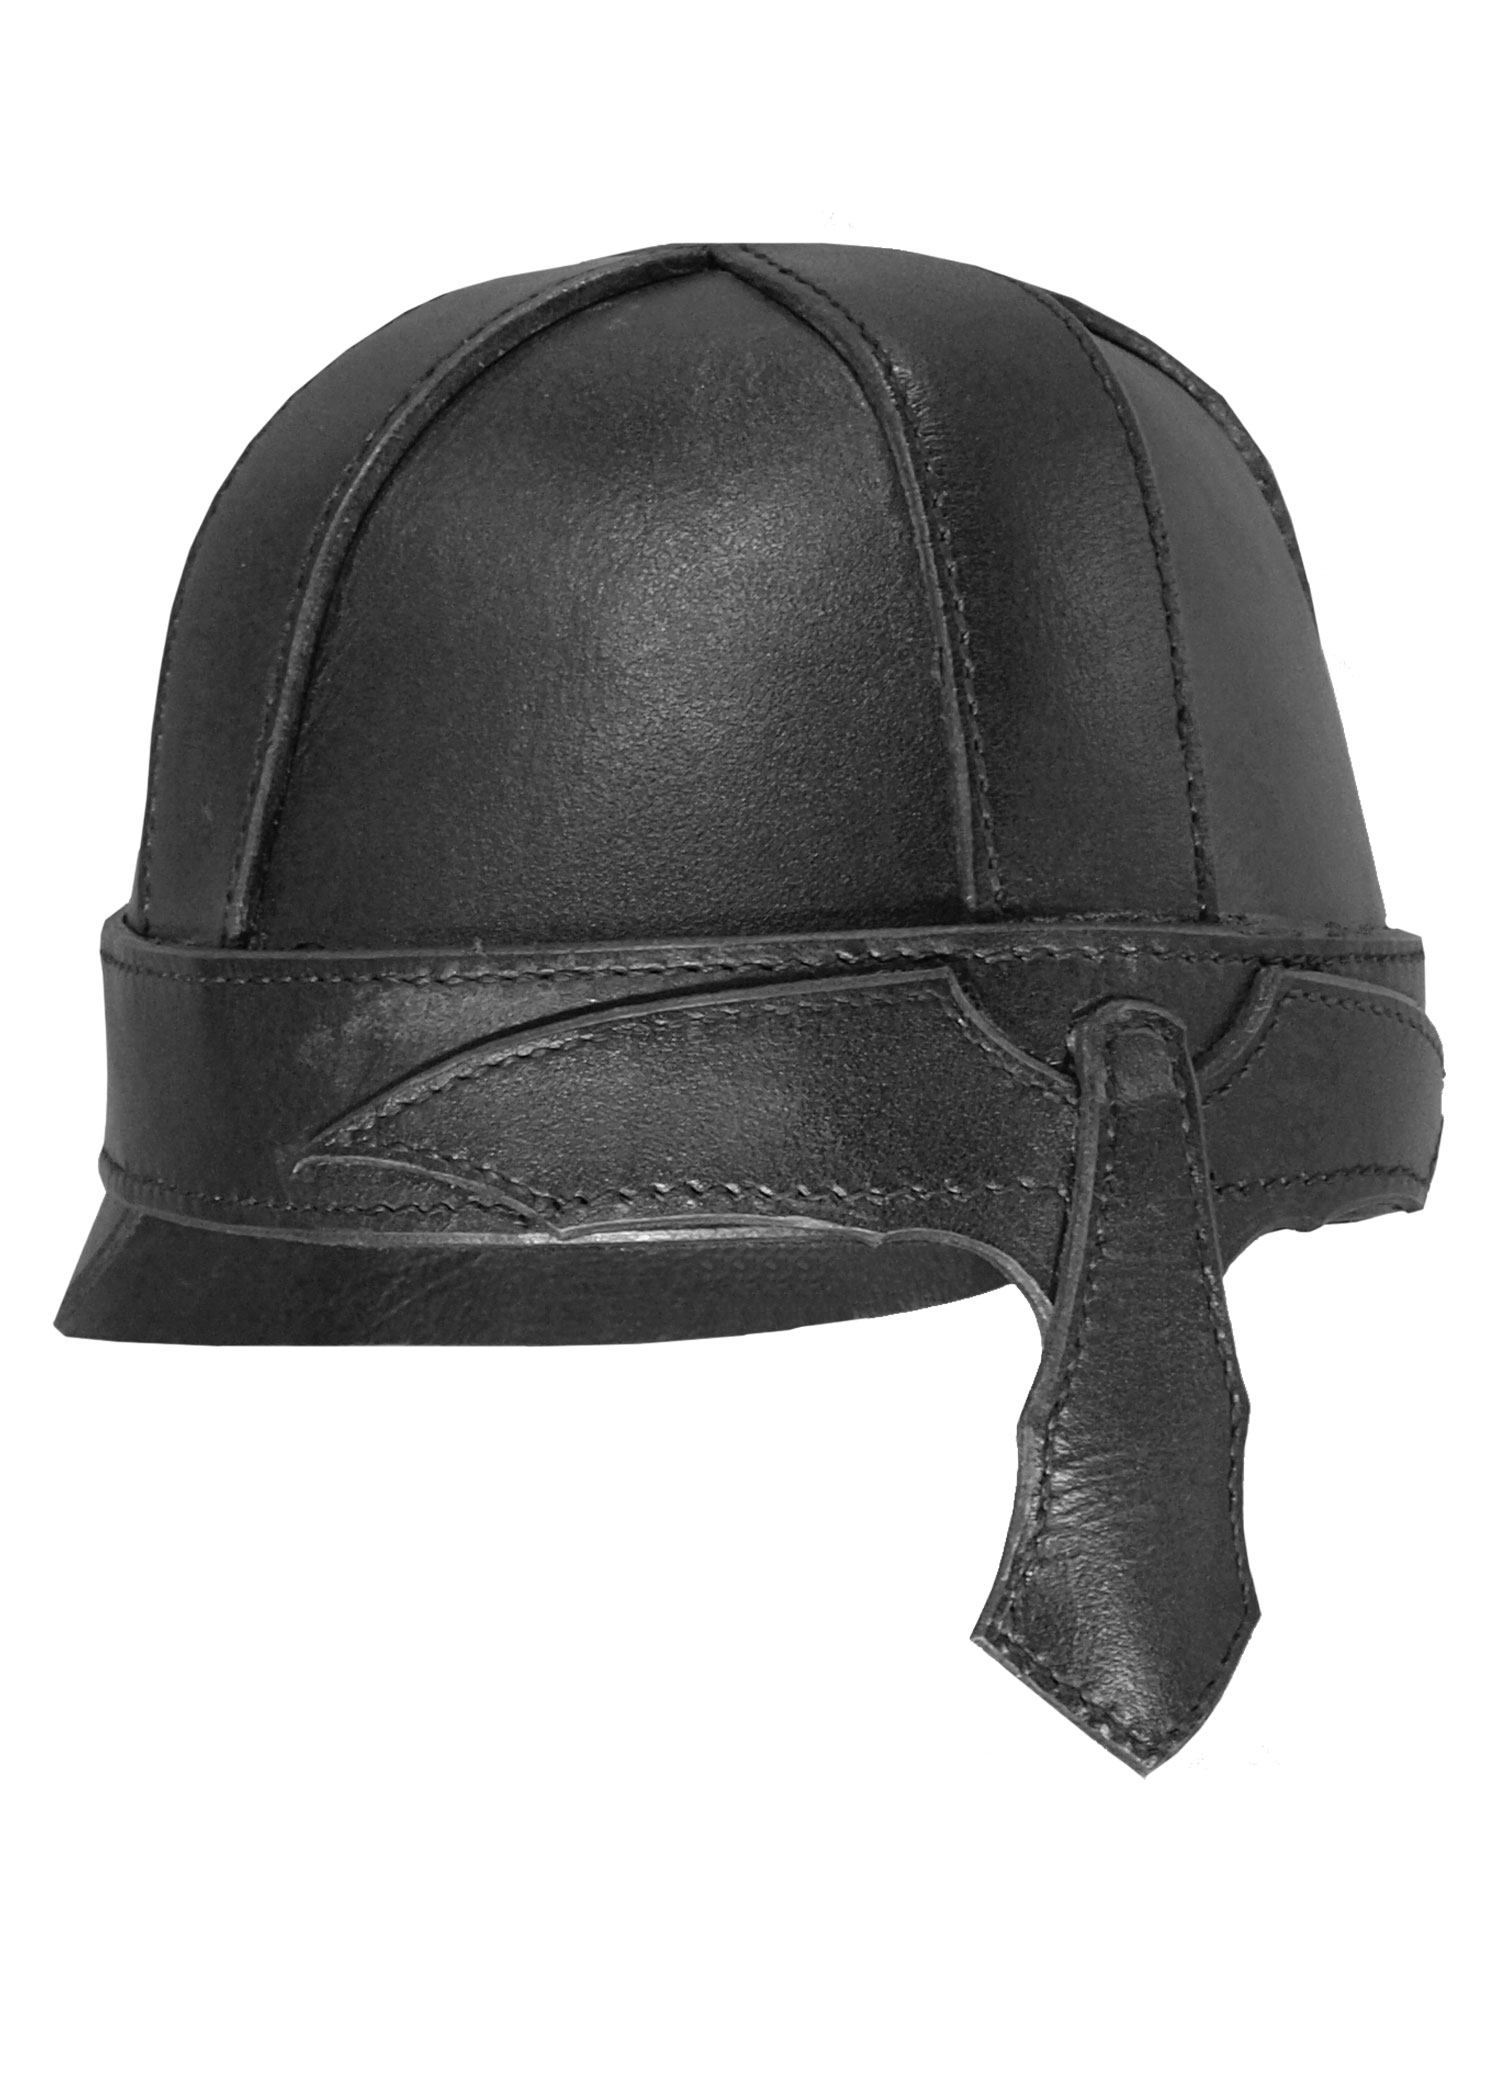 Helm Warrior aus Leder, schwarz, Größe L